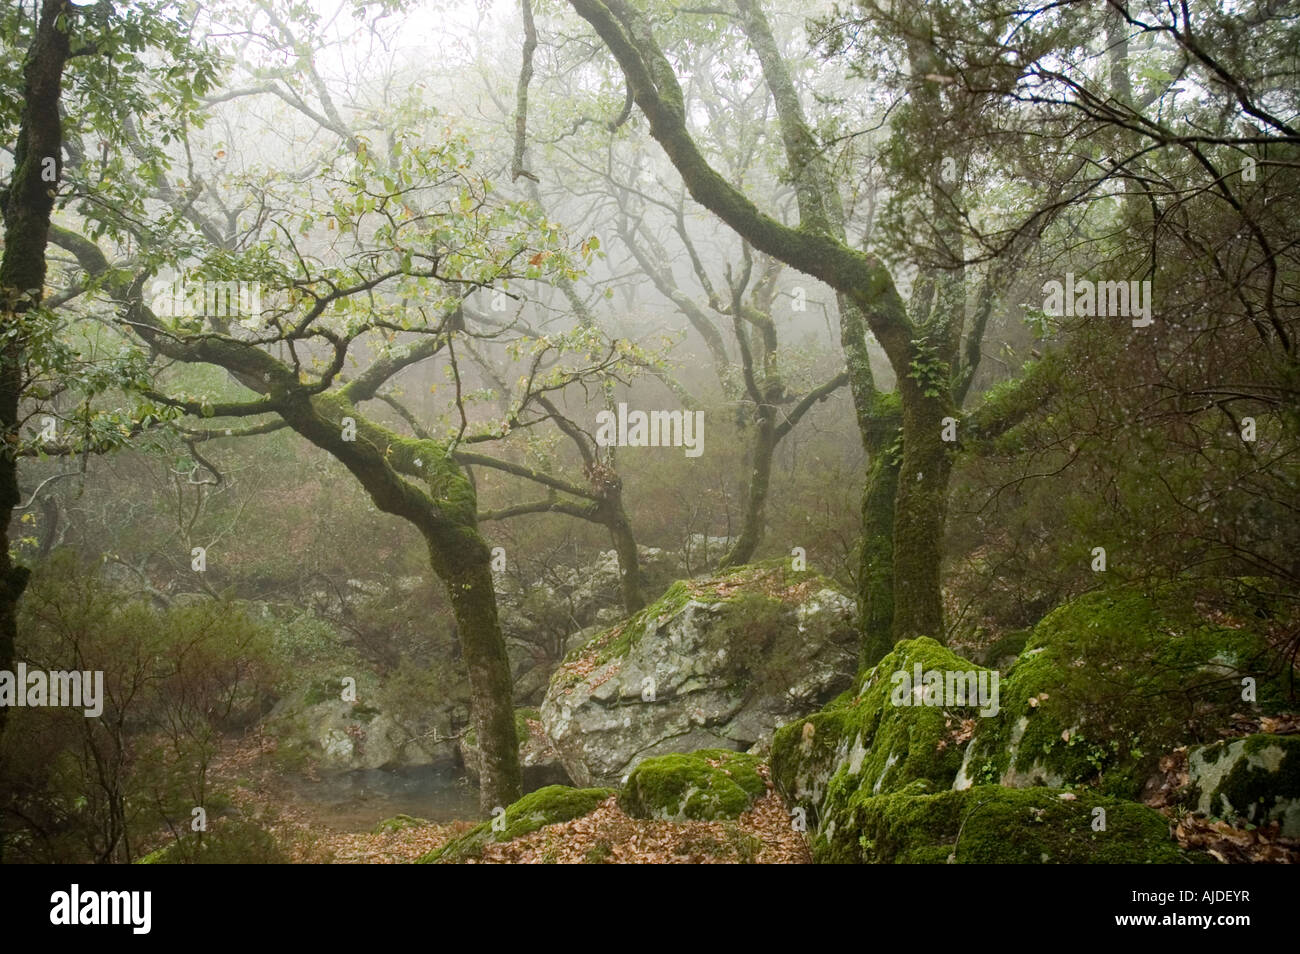 Típico bosque de niebla al Sur de España, en Los Alcornocales Stock Photo